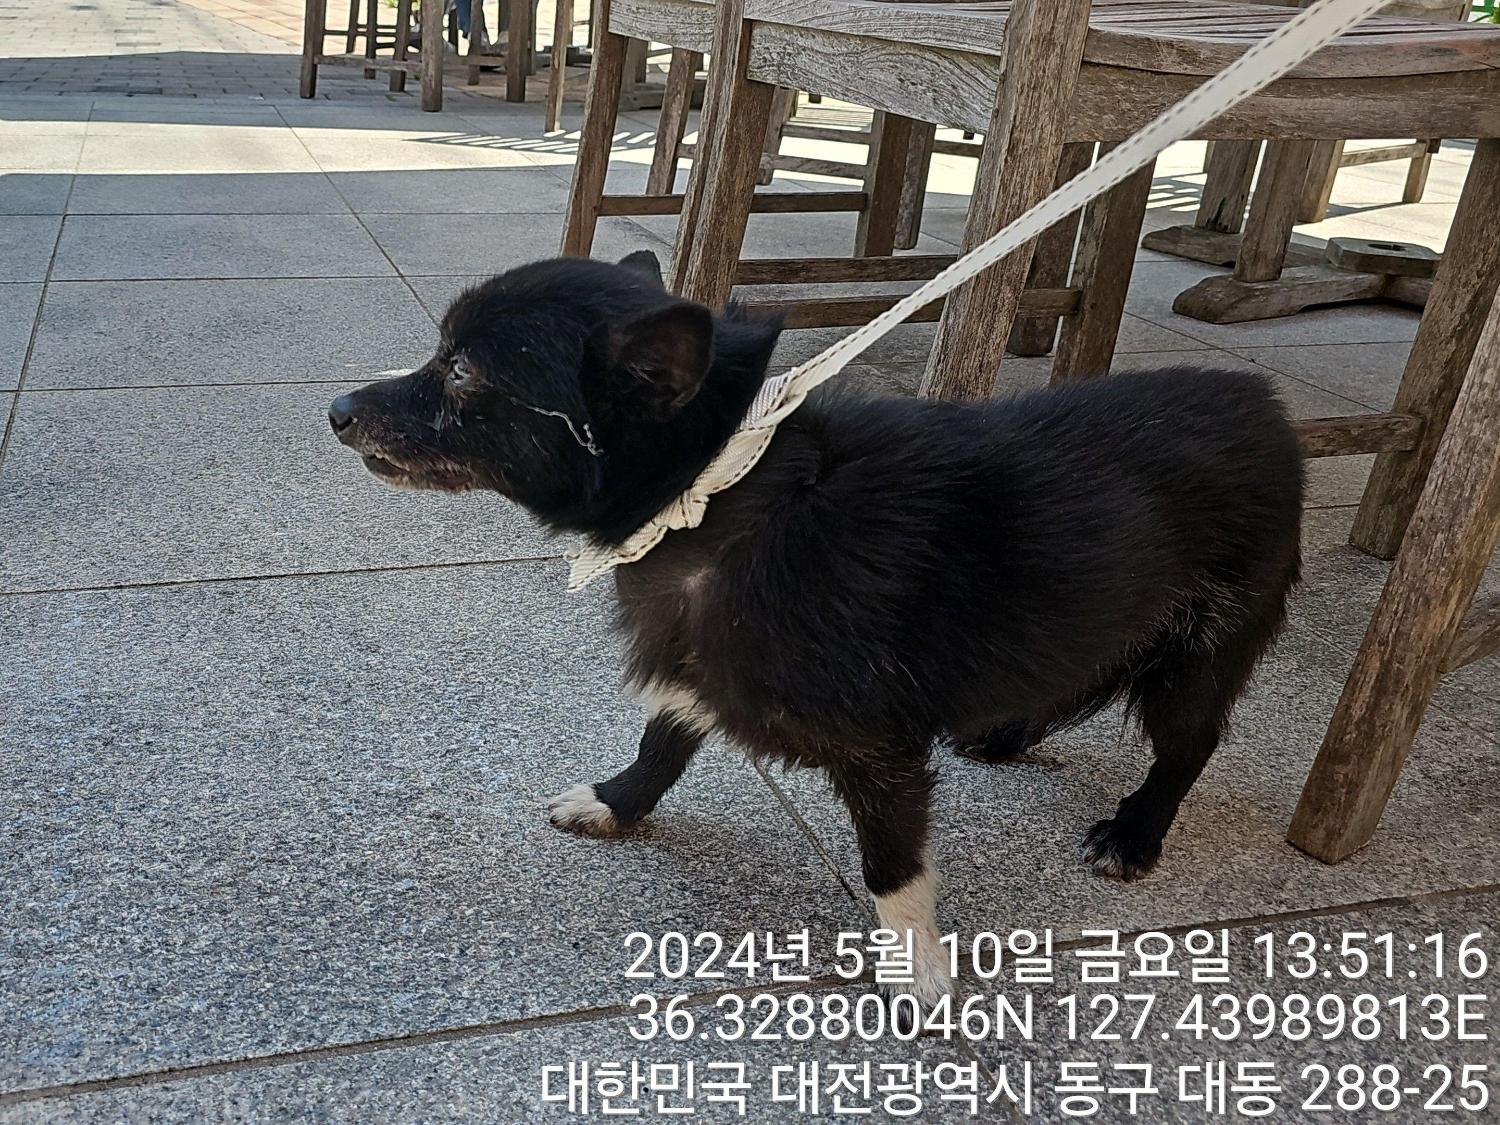 공고 번호가 대전-동구-2024-00123인 믹스견 동물 사진  